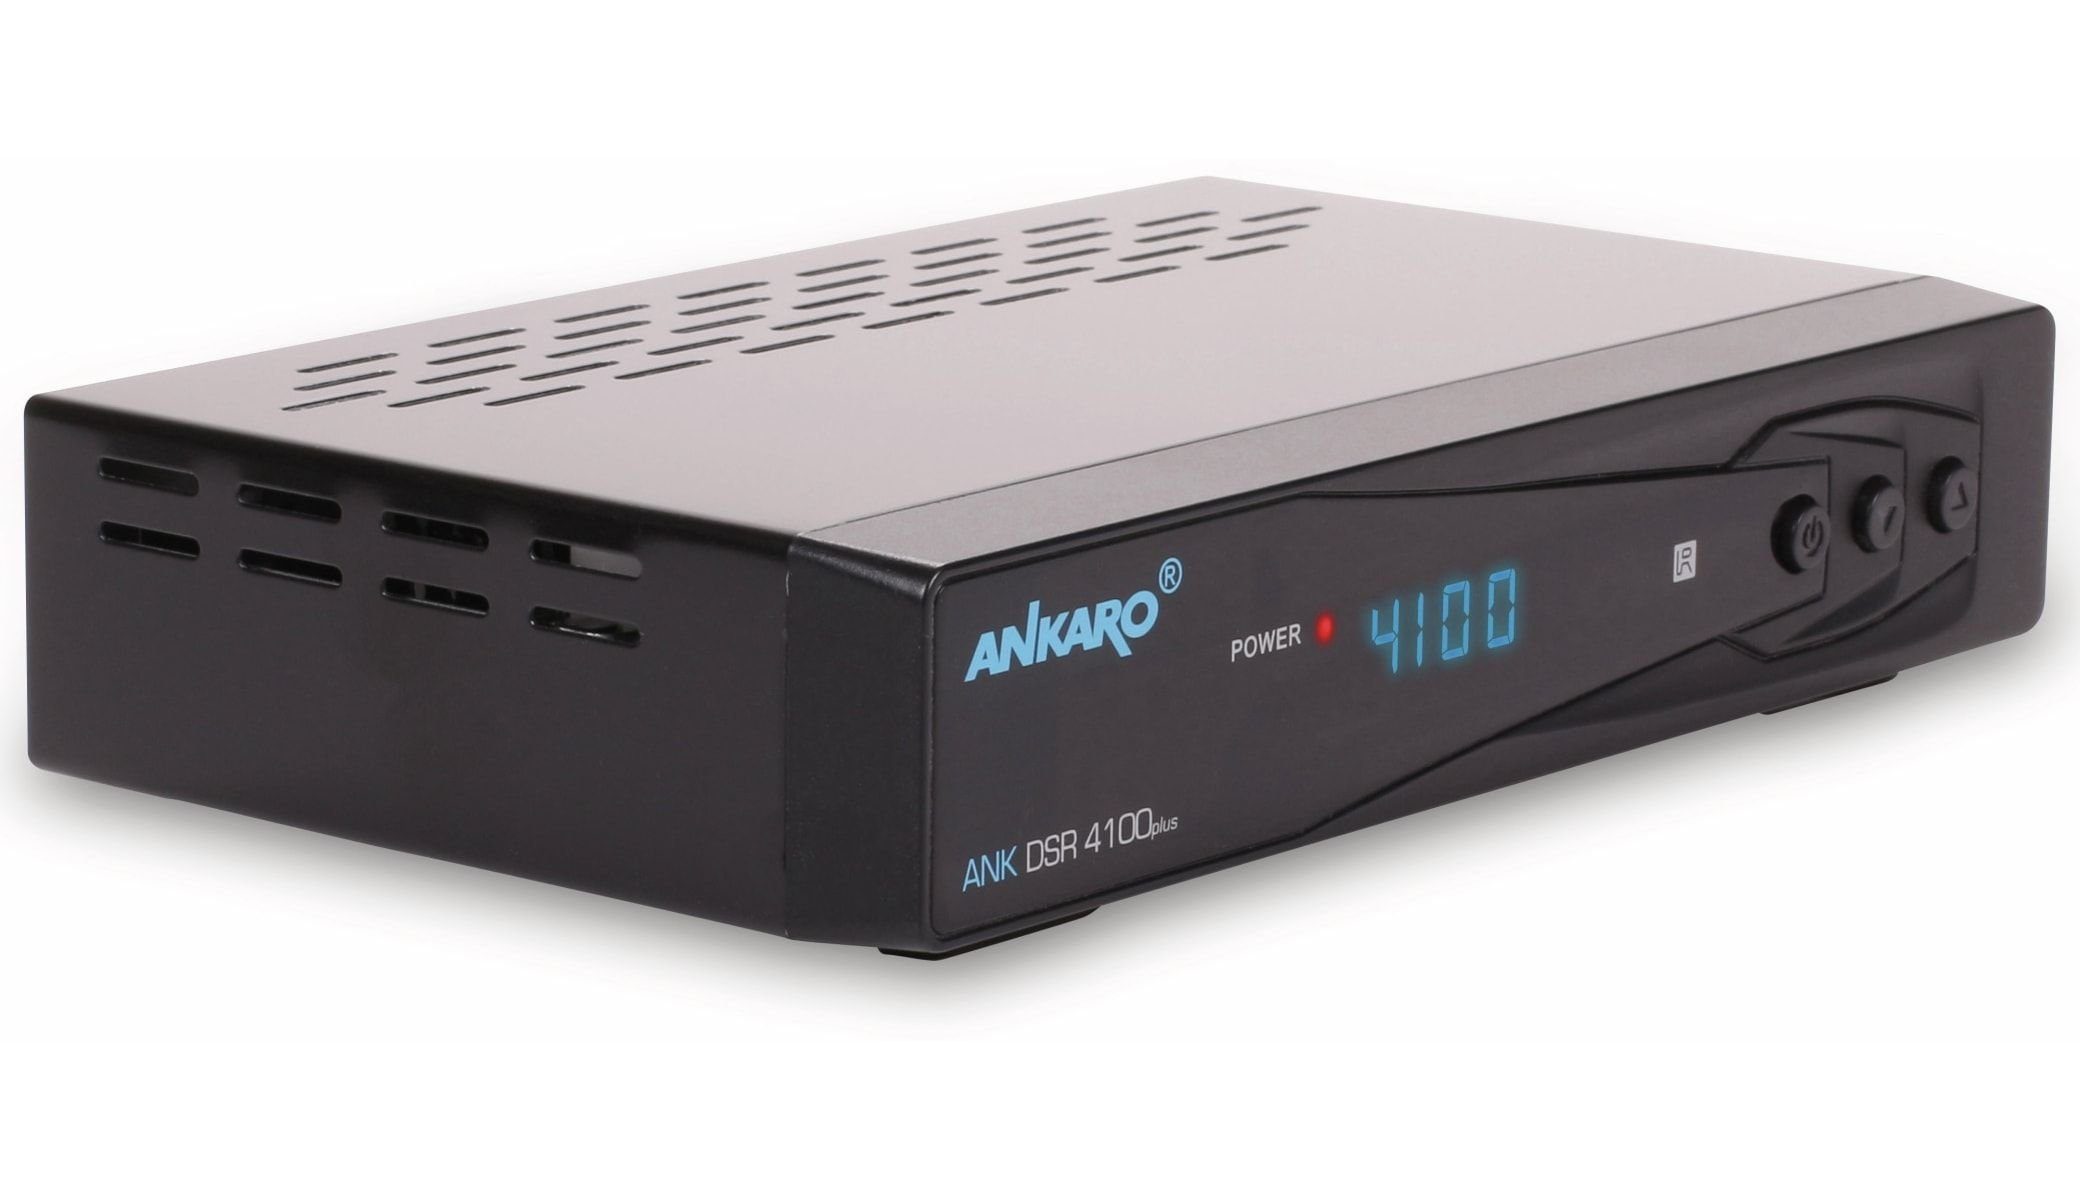 Satellitenreceiver DSR 4100plus Ankaro DVB-S HDTV-Receiver ANKARO